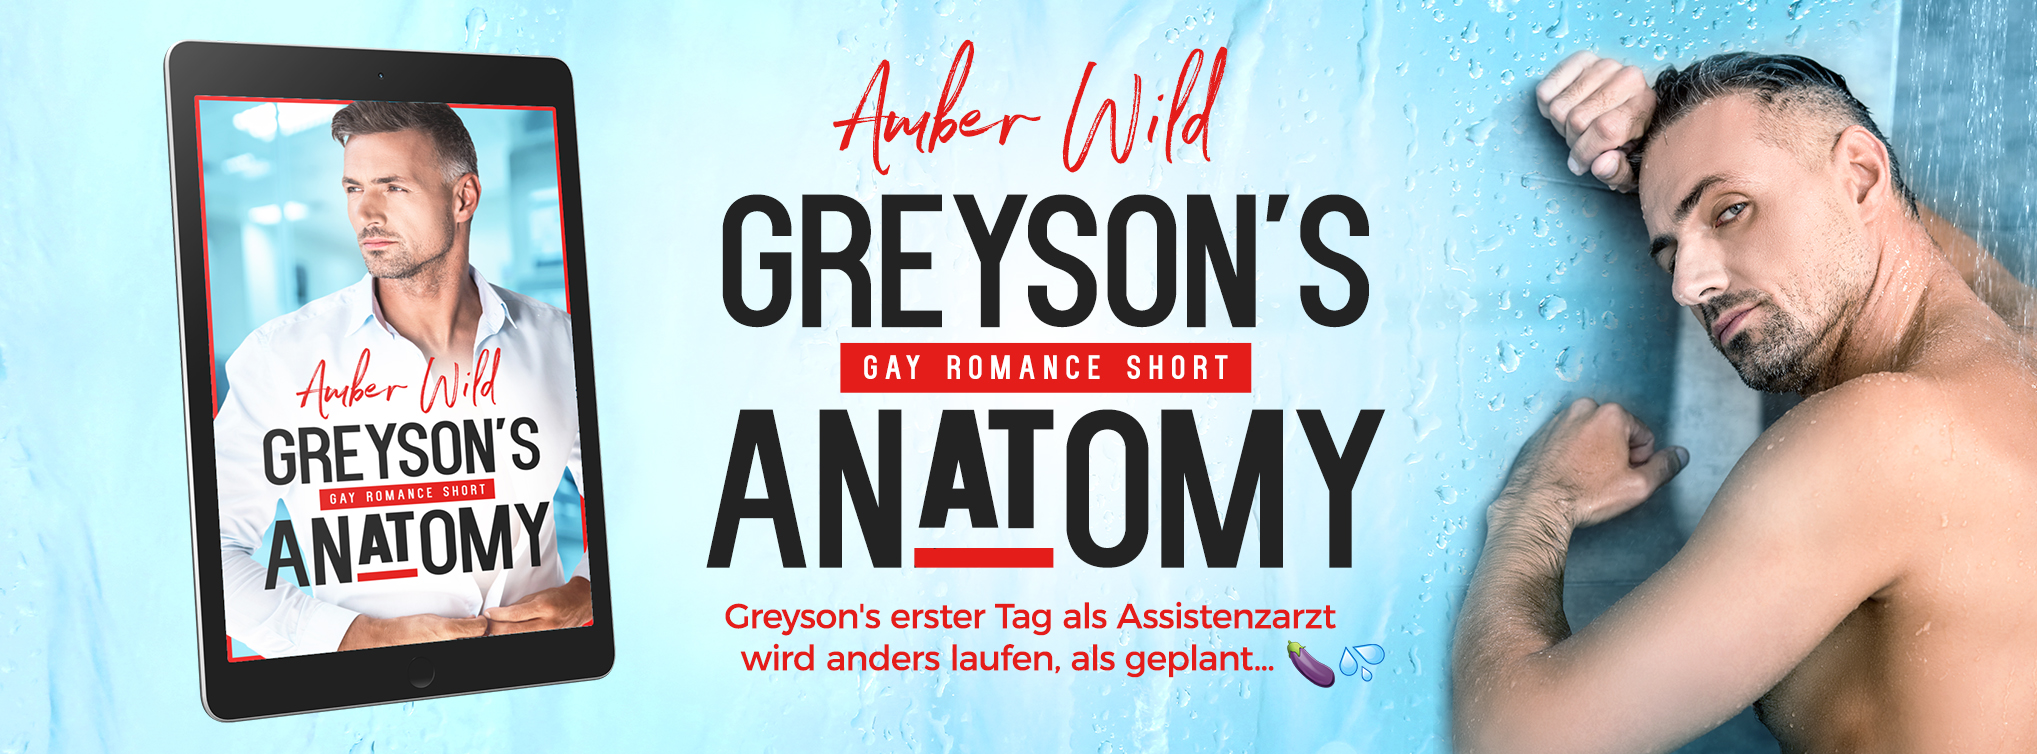 Web Banner Gay Romance Greyson's Anatomy von Amber Wild